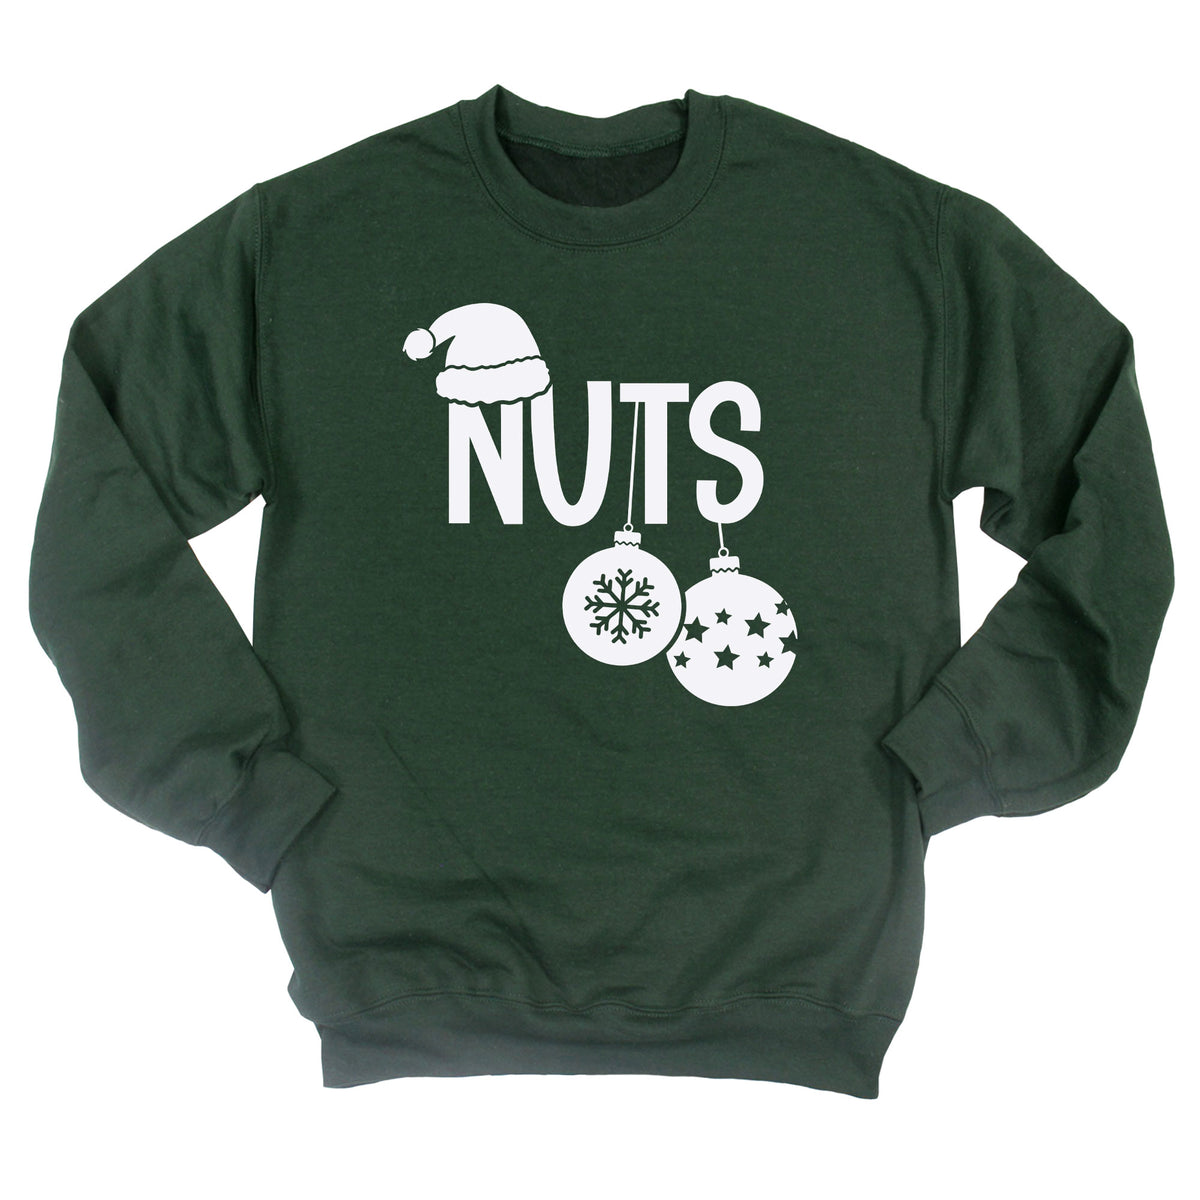 Chest / Nuts Sweatshirt